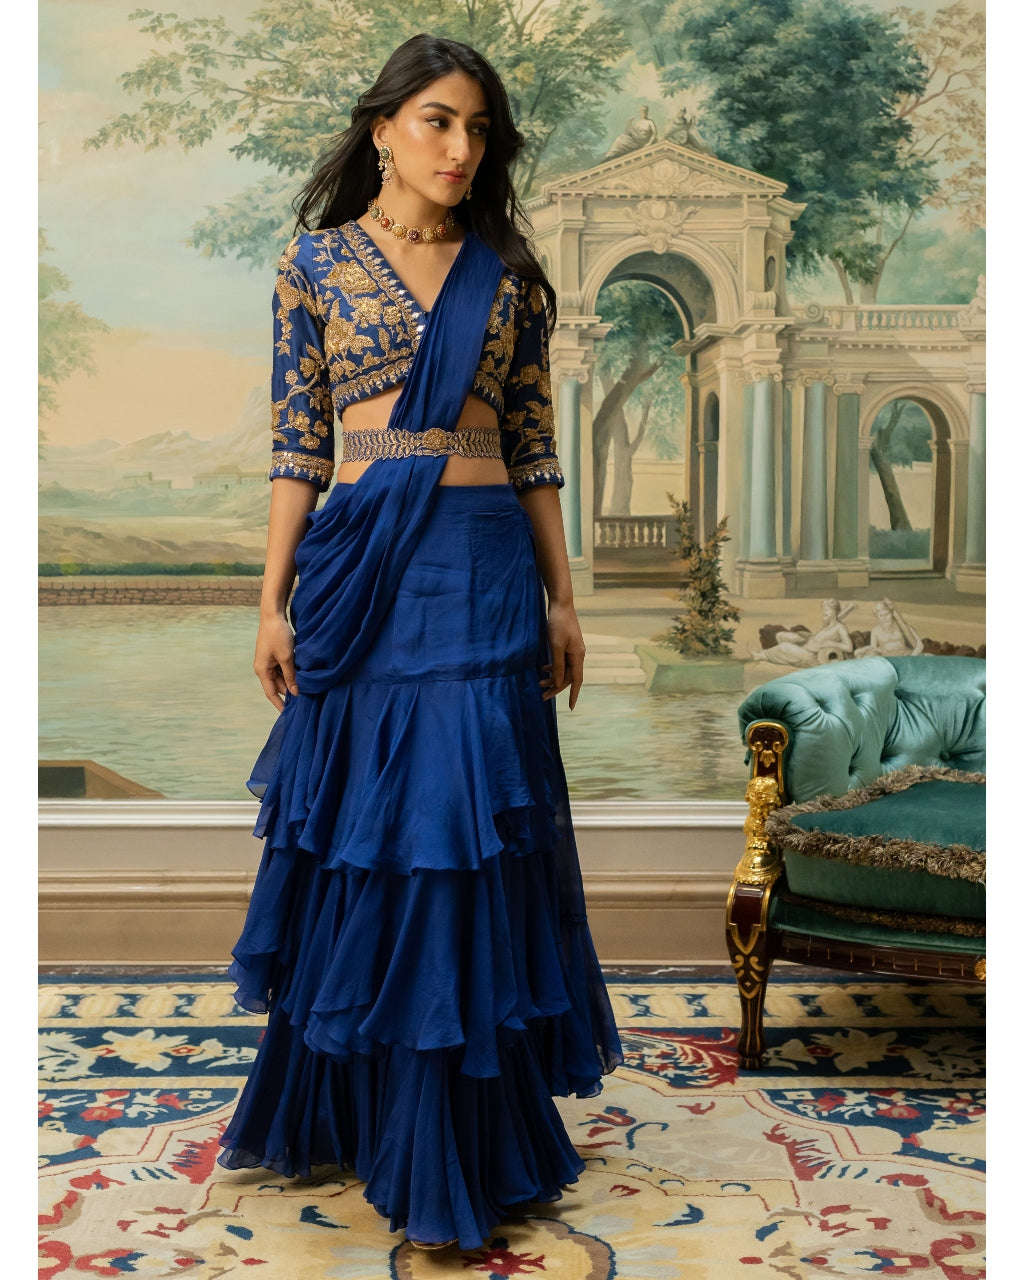 Electric Blue Layered Sari Set